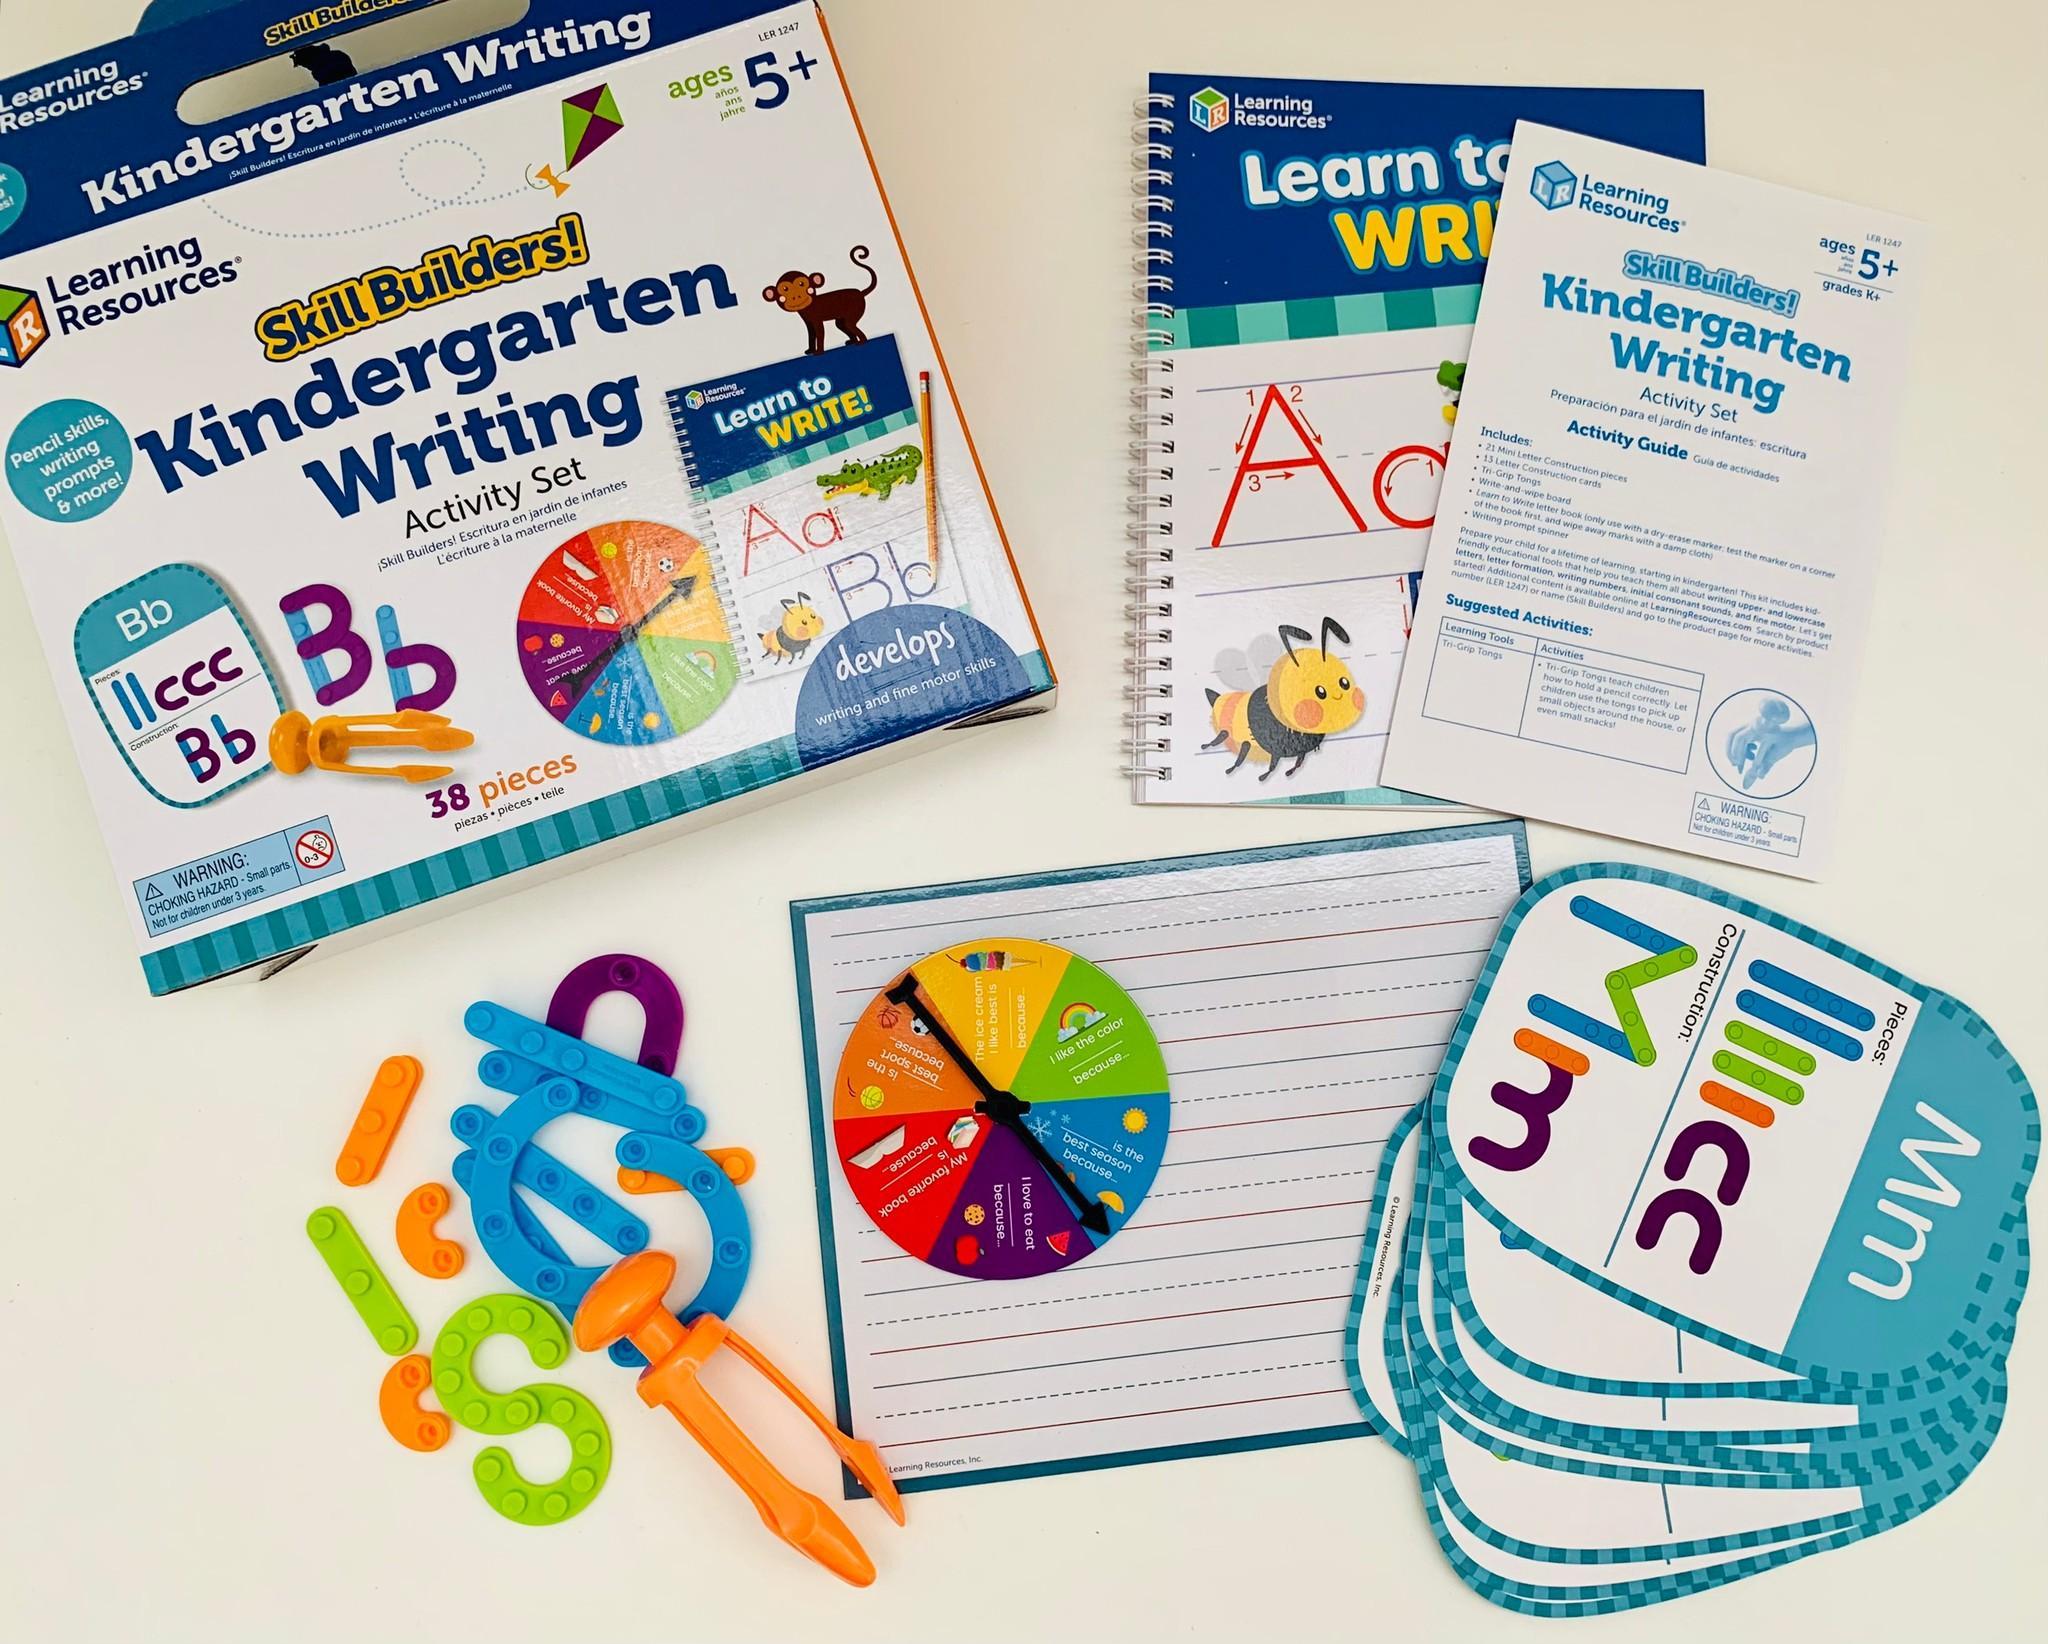 Learning Resources Đồ chơi xây dựng kỹ năng! Học viết tuổi mẫu giáo  - Skill Builders! Kindergarten Writing